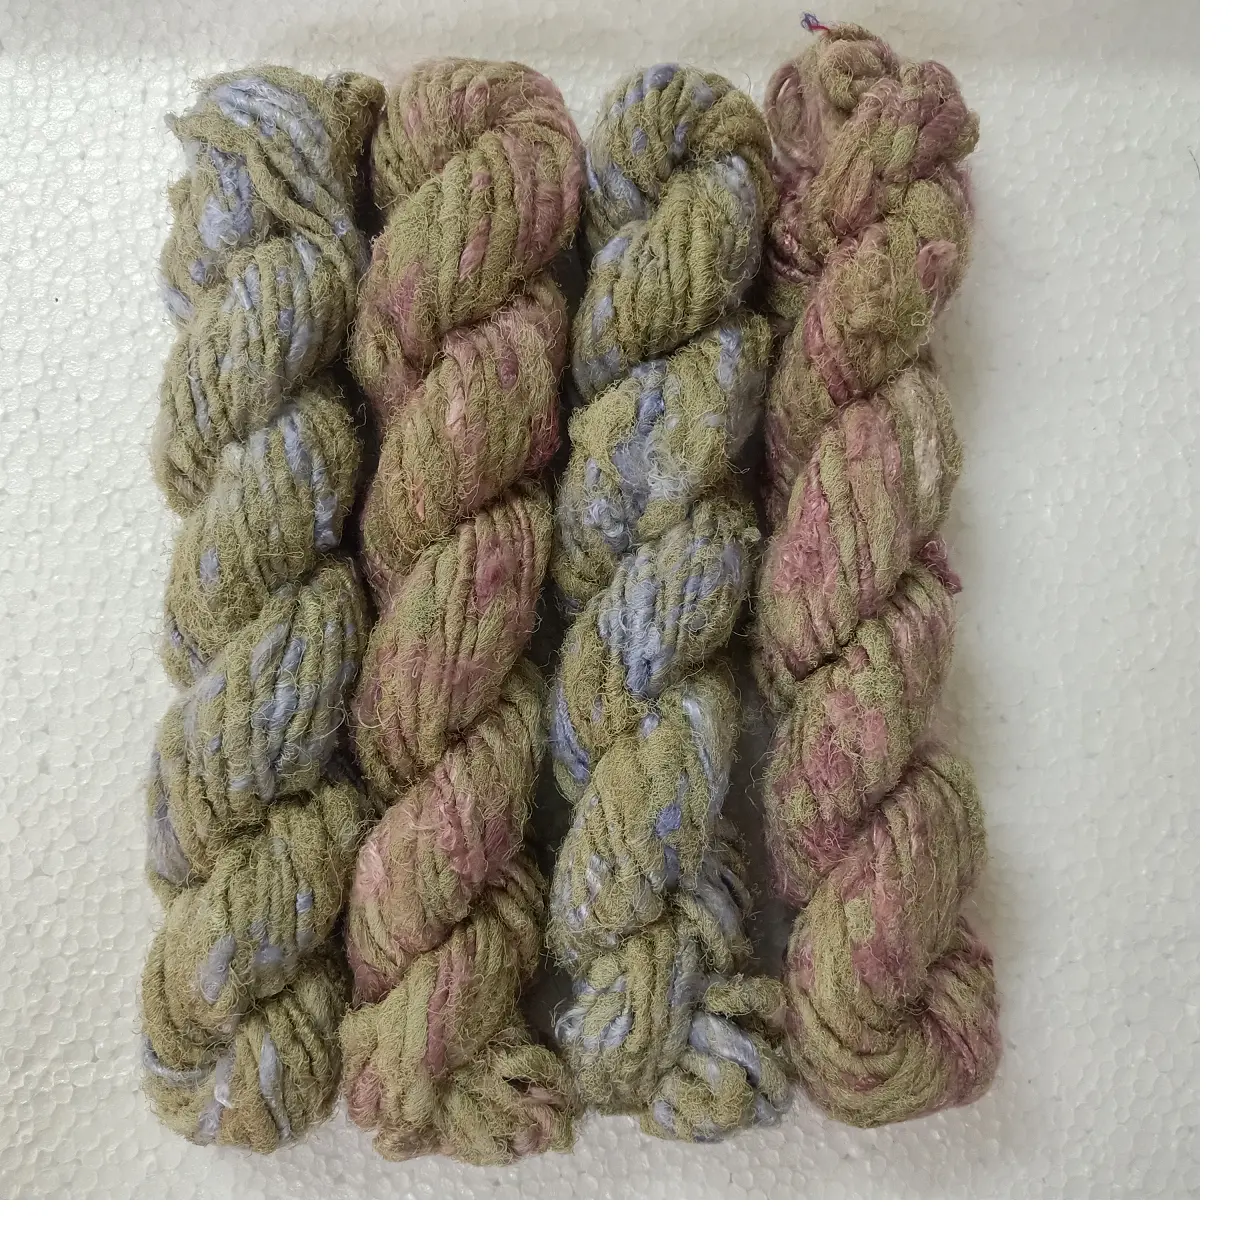 レーヨンビスコース廃棄繊維から作られた素朴な色の古いヴィンテージ風に染められたカスタムメイドのバナナシルク糸